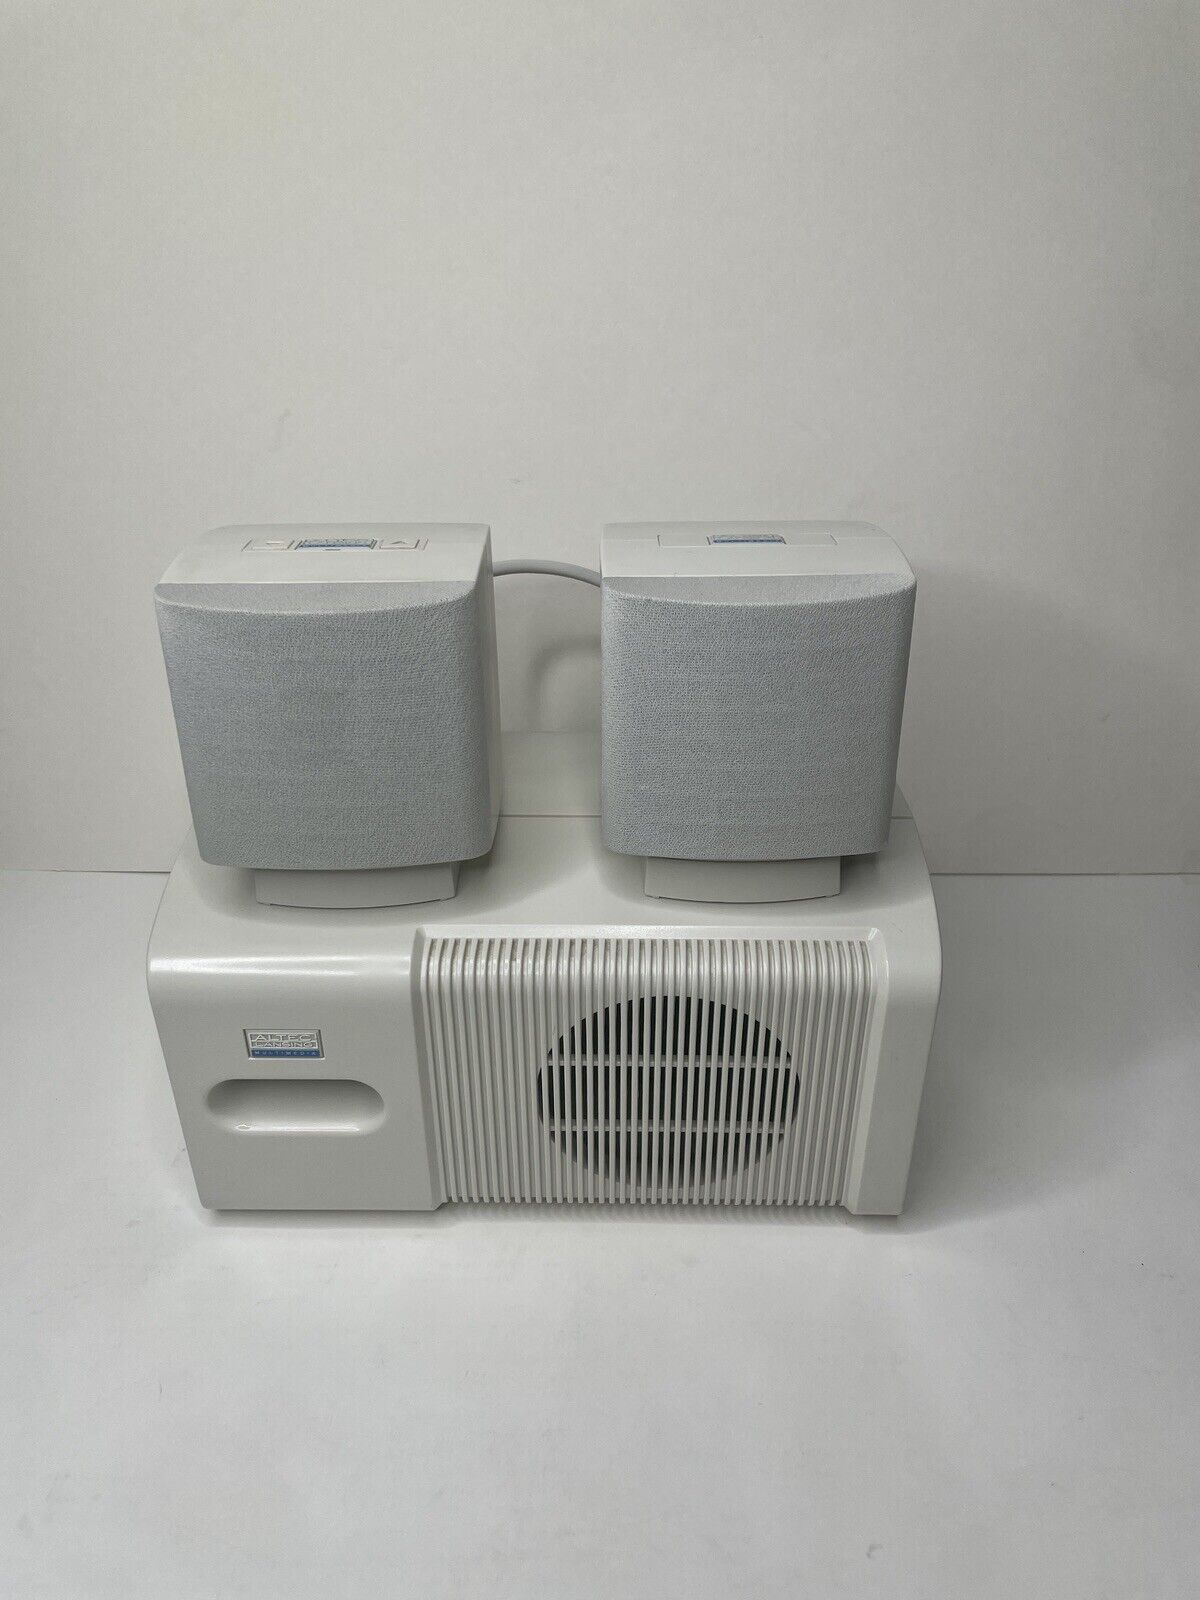 Altec Lansing 2.1 Computer Speaker System Subwoofer & 2 Speakers ACS45 Vintage